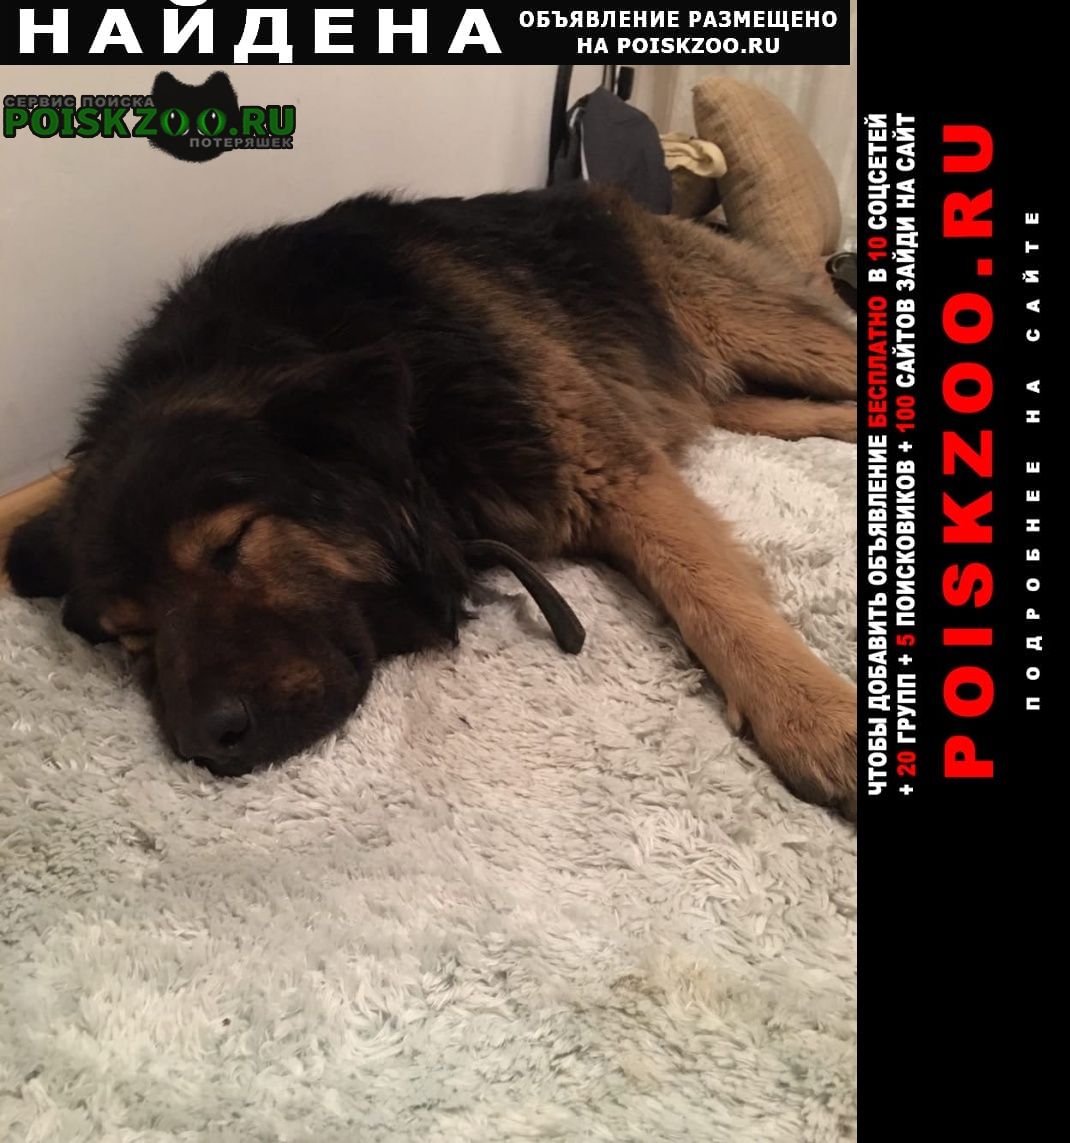 Найдена собака кобель кавказская овчарка мальчик Калининград (Кенигсберг)